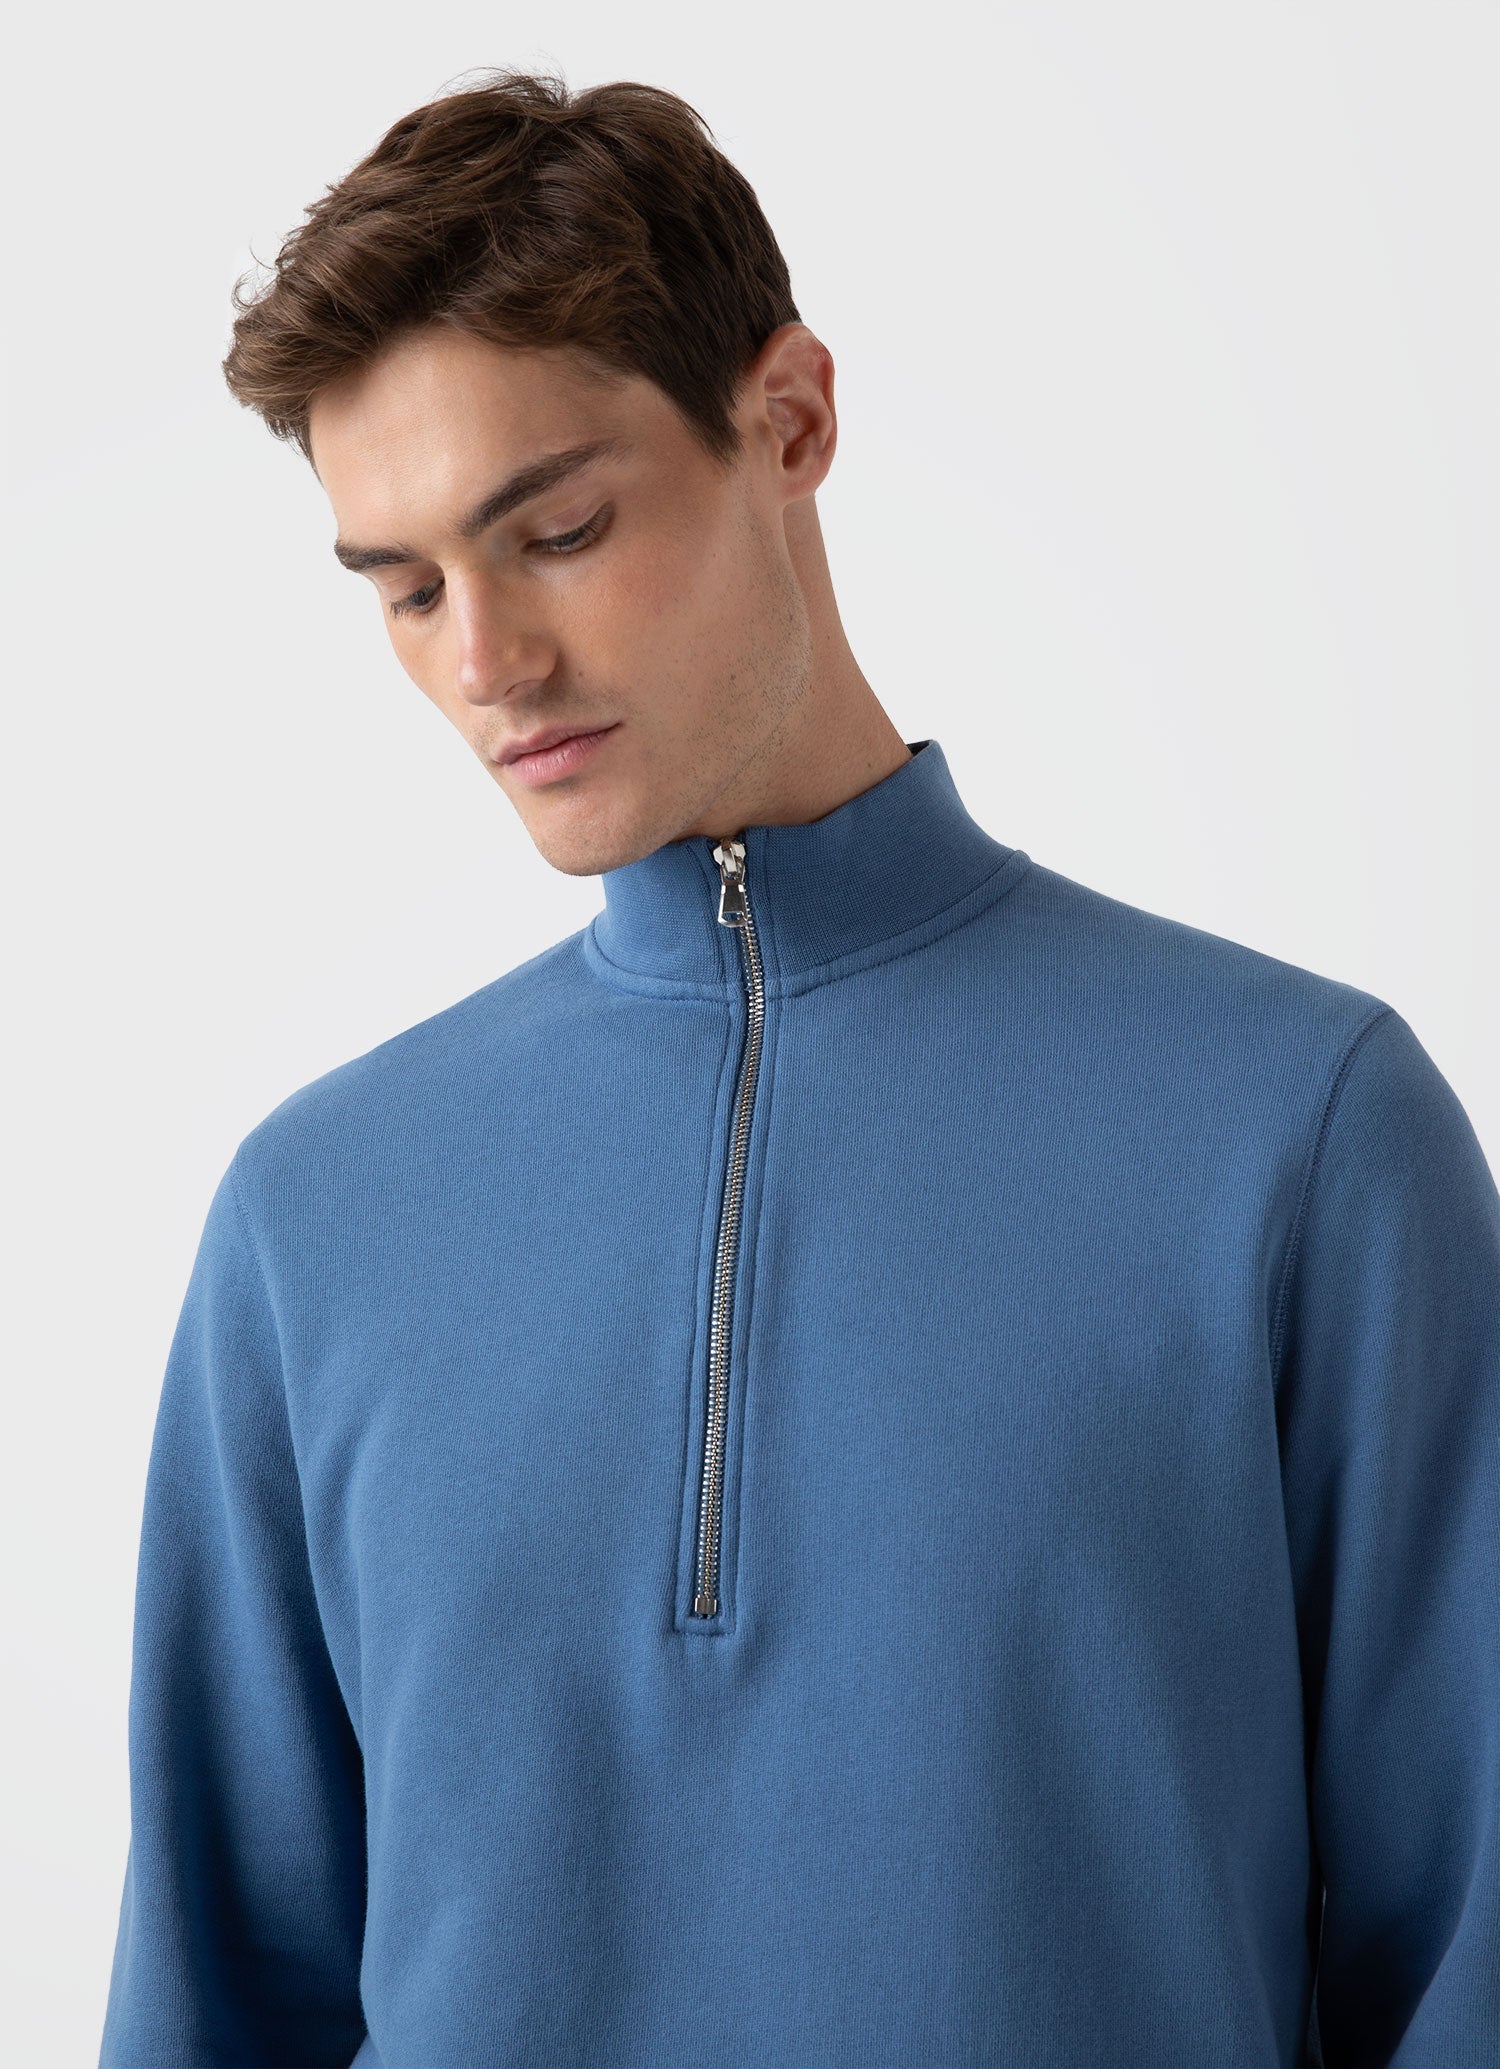 Men's Half Zip Loopback Sweatshirt in Bluestone